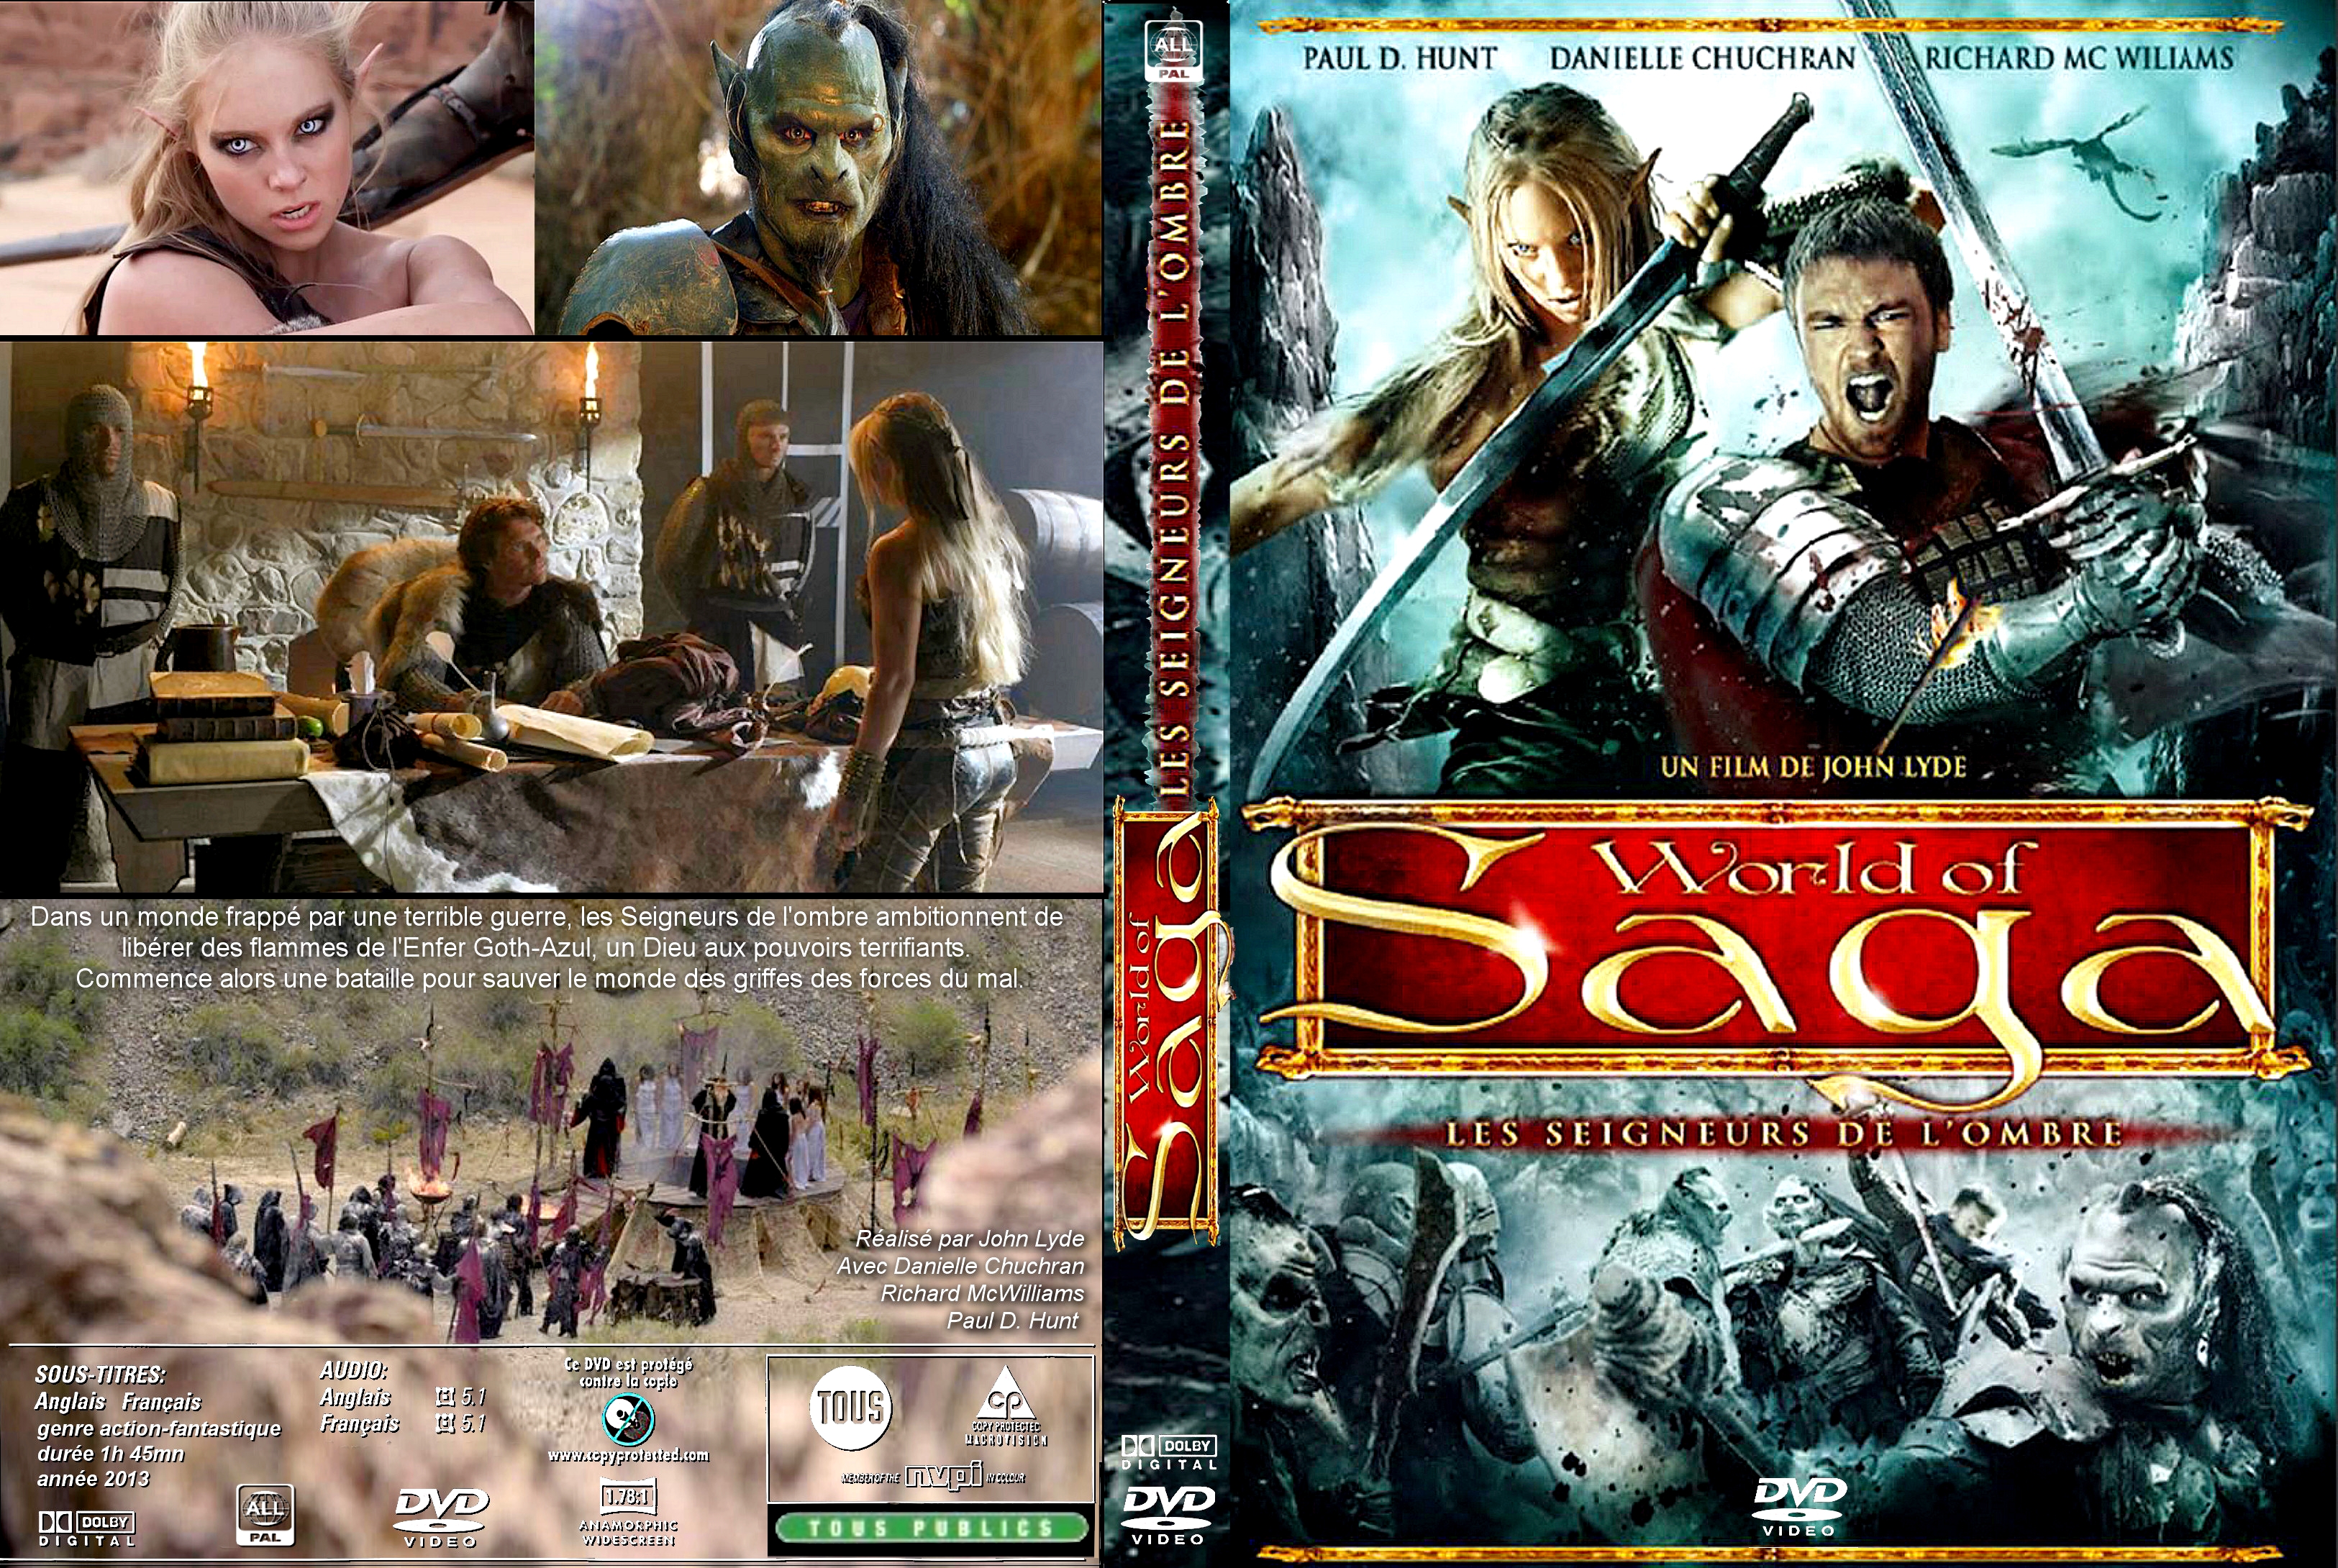 Jaquette DVD World of saga les seigneurs de l